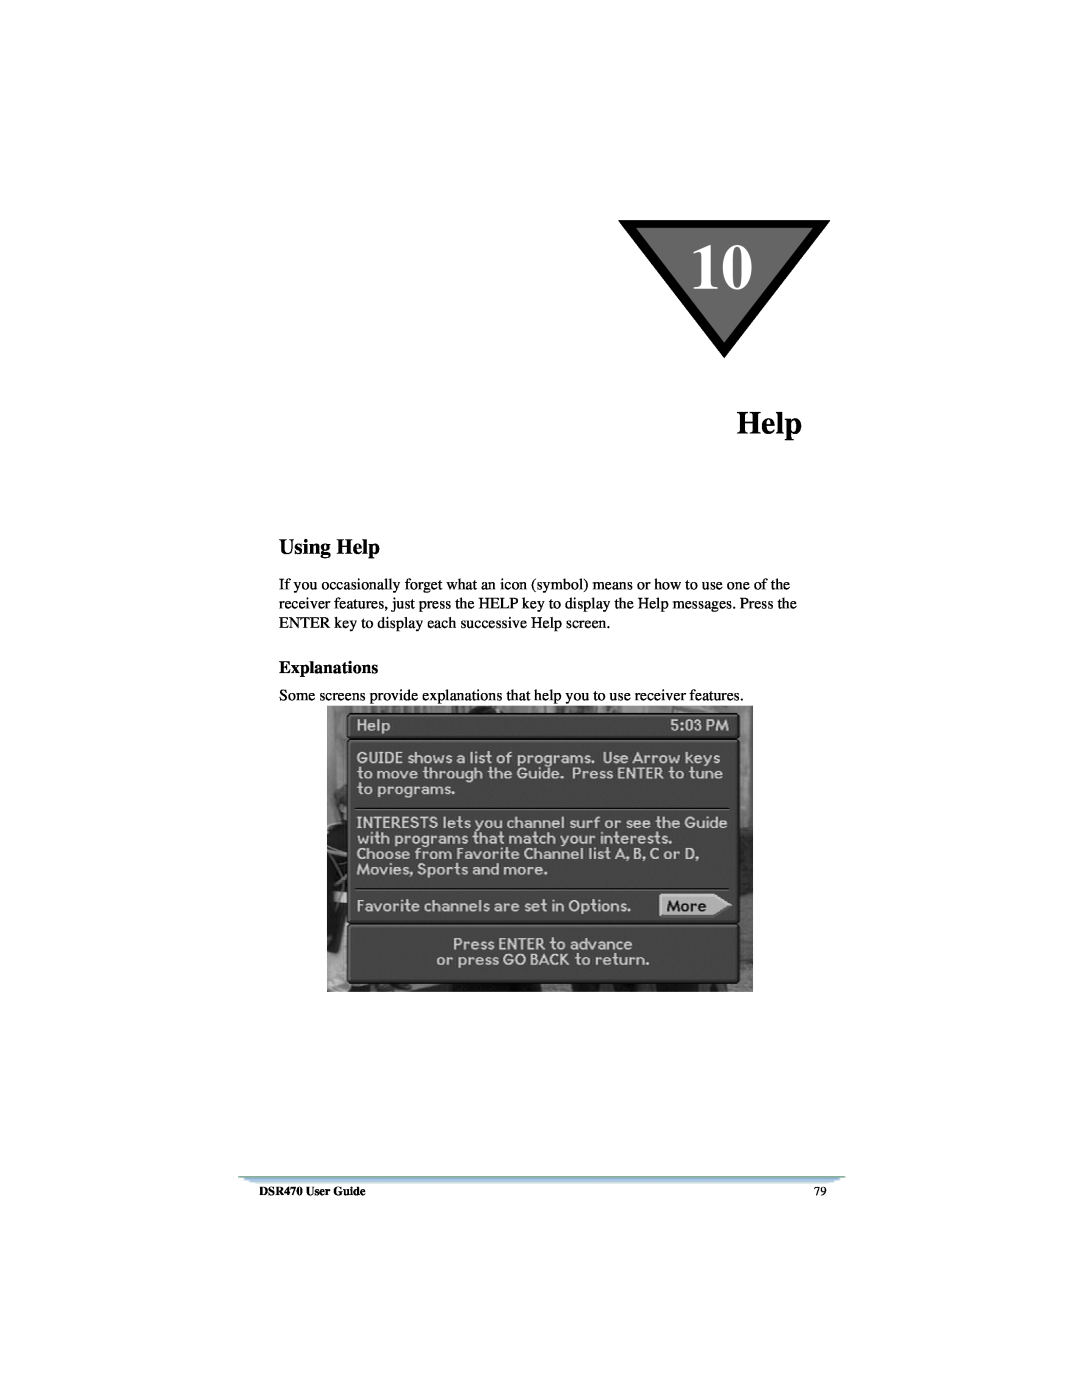 Univex DSR470 manual Using Help, Explanations 